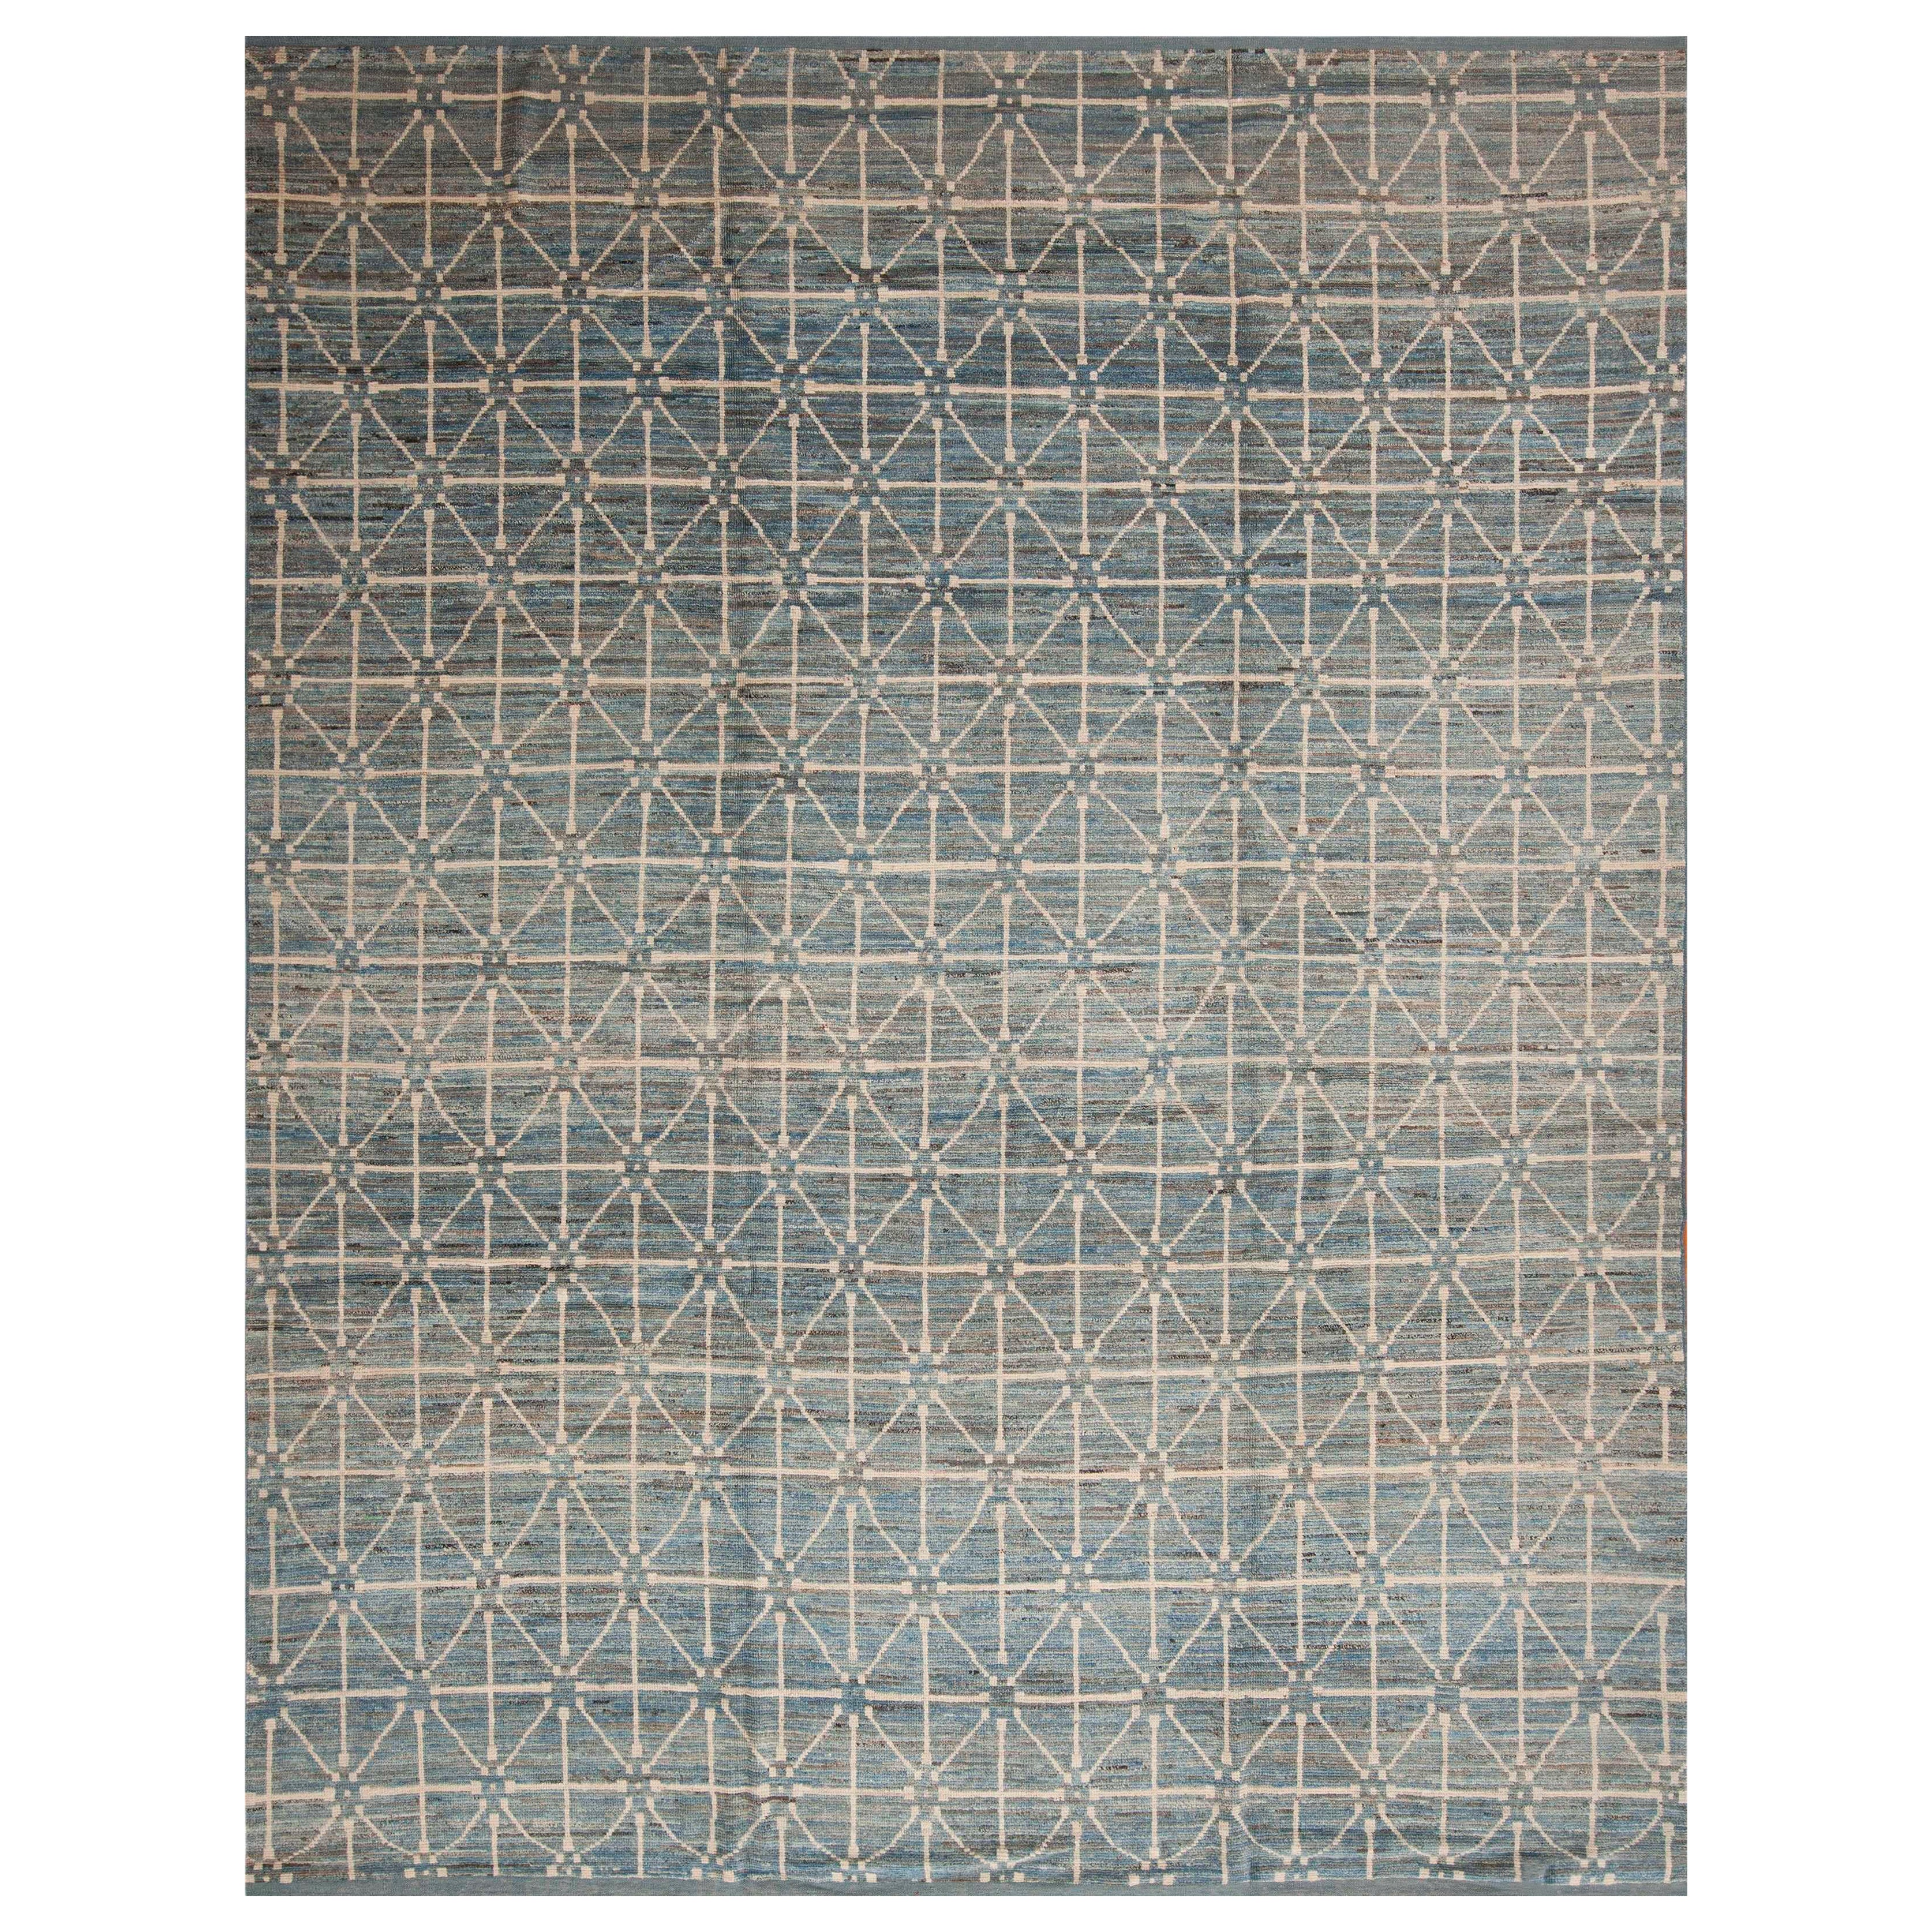 Collection Nazmiyal - Tapis moderne de couleur grise et bleue sur toute la surface 9'5" x 12'4"